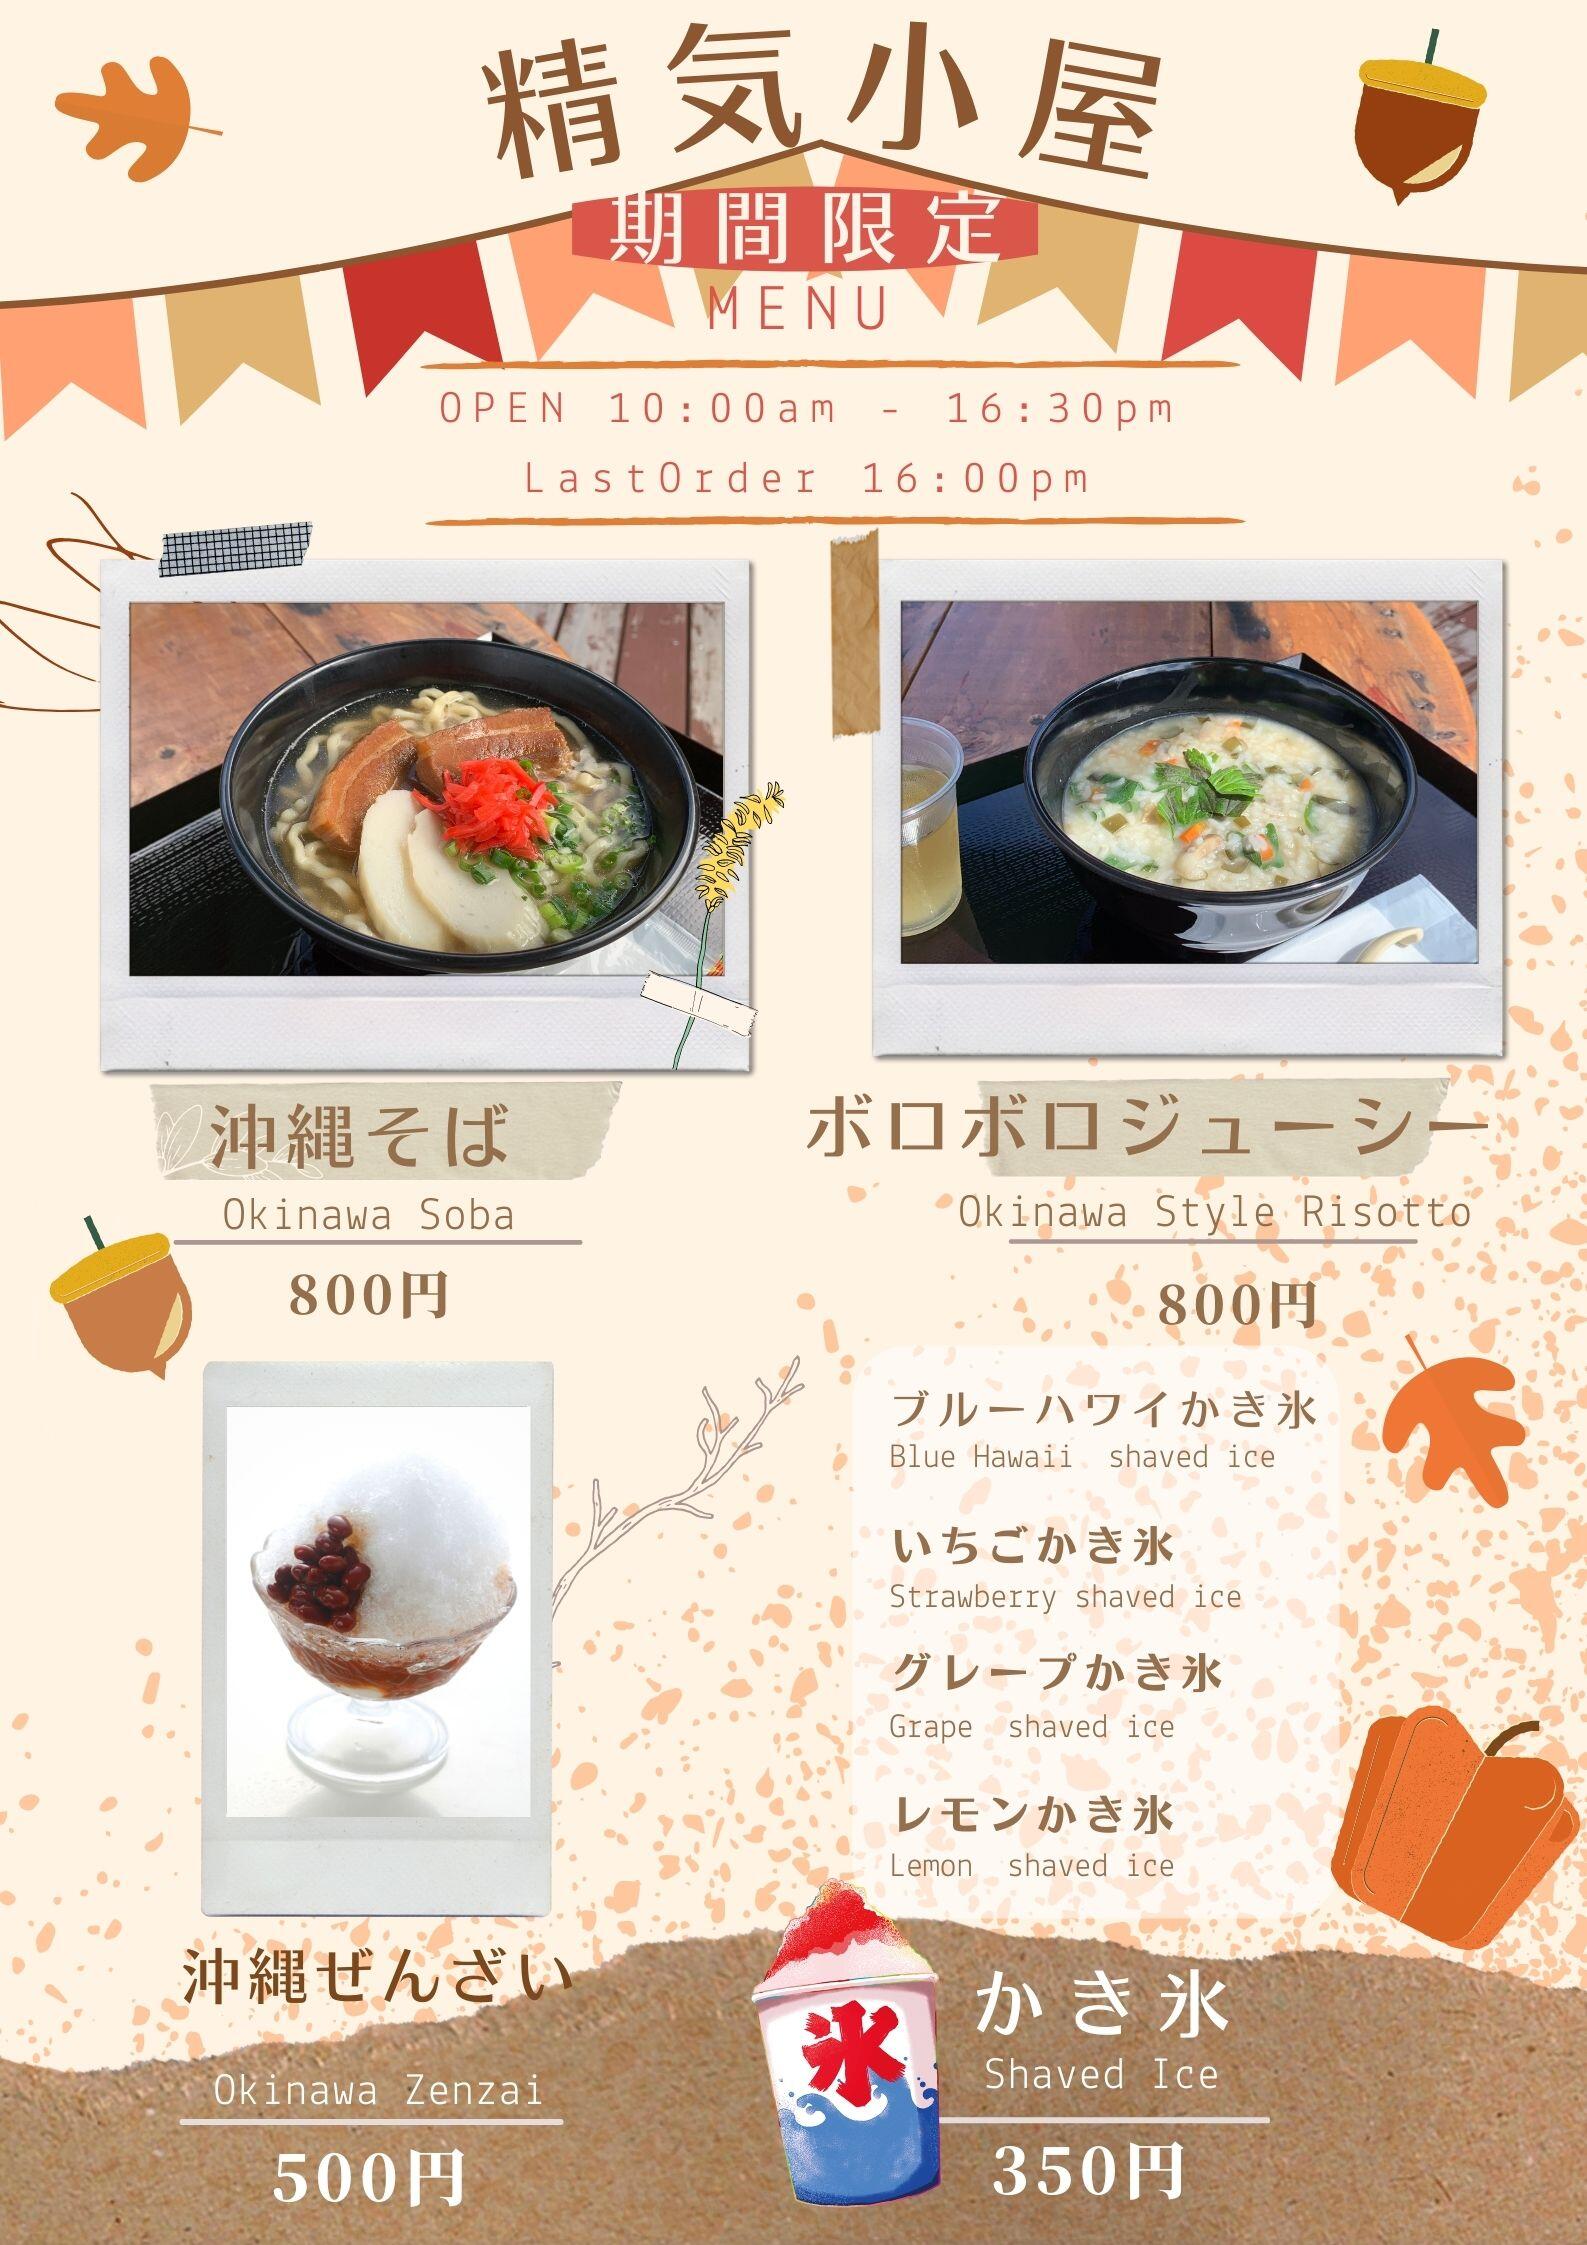 https://www.sekirinzan.com/images/menu_seikikoya.jpg